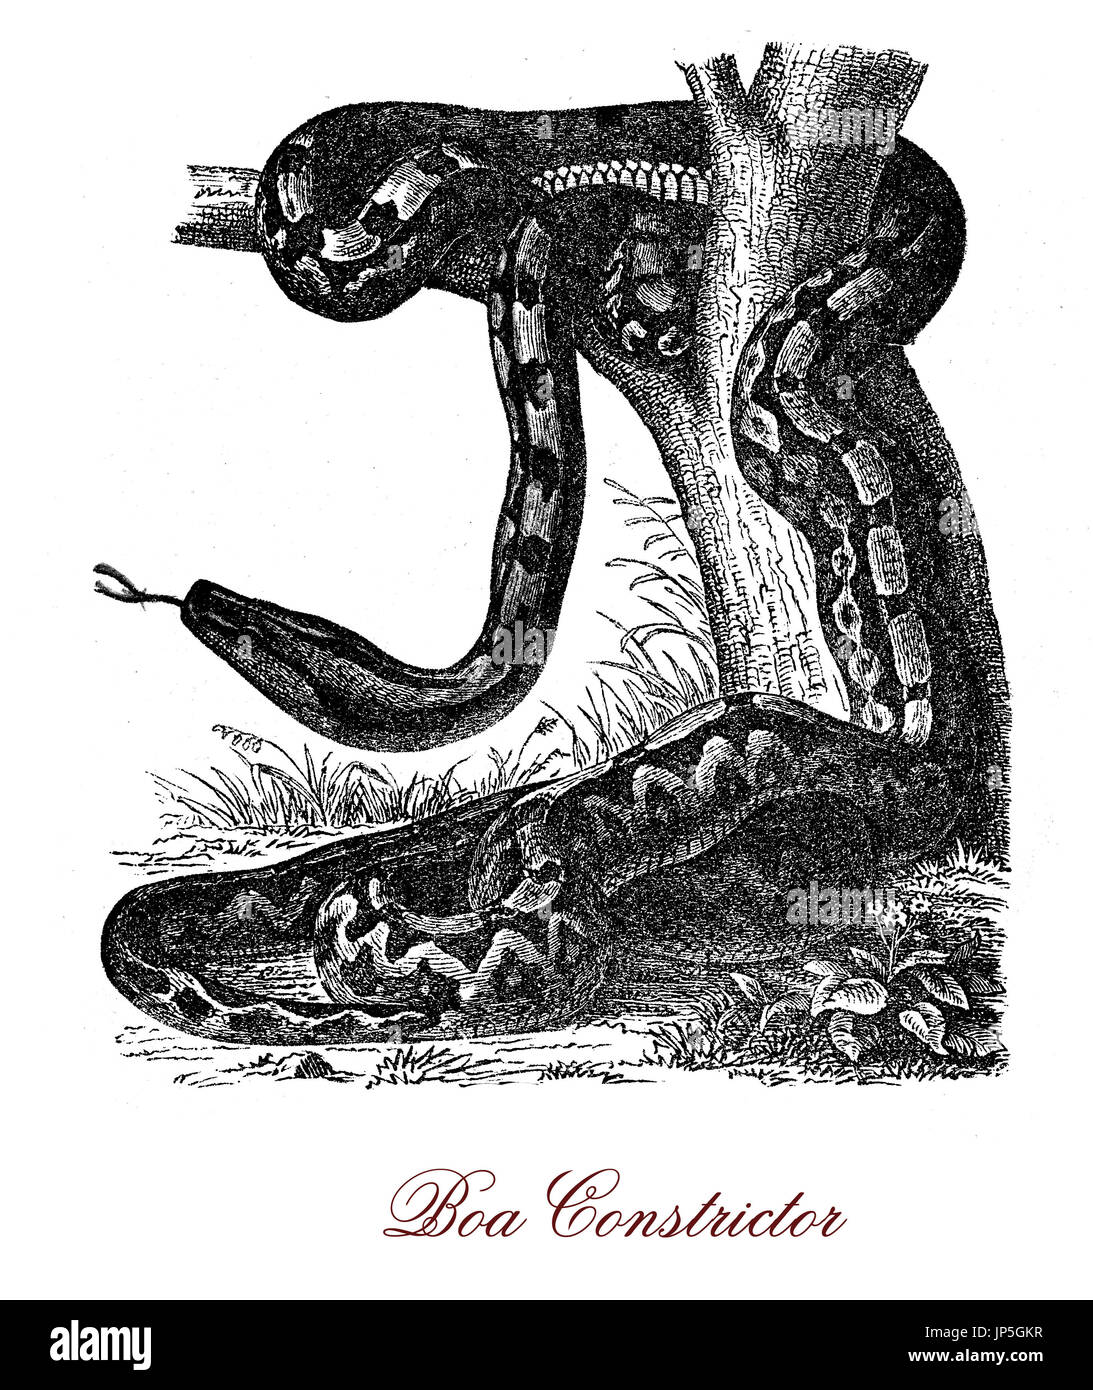 Vintage portrait de boa constrictor, gros serpent nocturne originaire d'Amérique,prédateur sauvage avec des échelles de couleur crème et brun, à quelques kilomètres seulement du camouflage dans la jungle. Banque D'Images